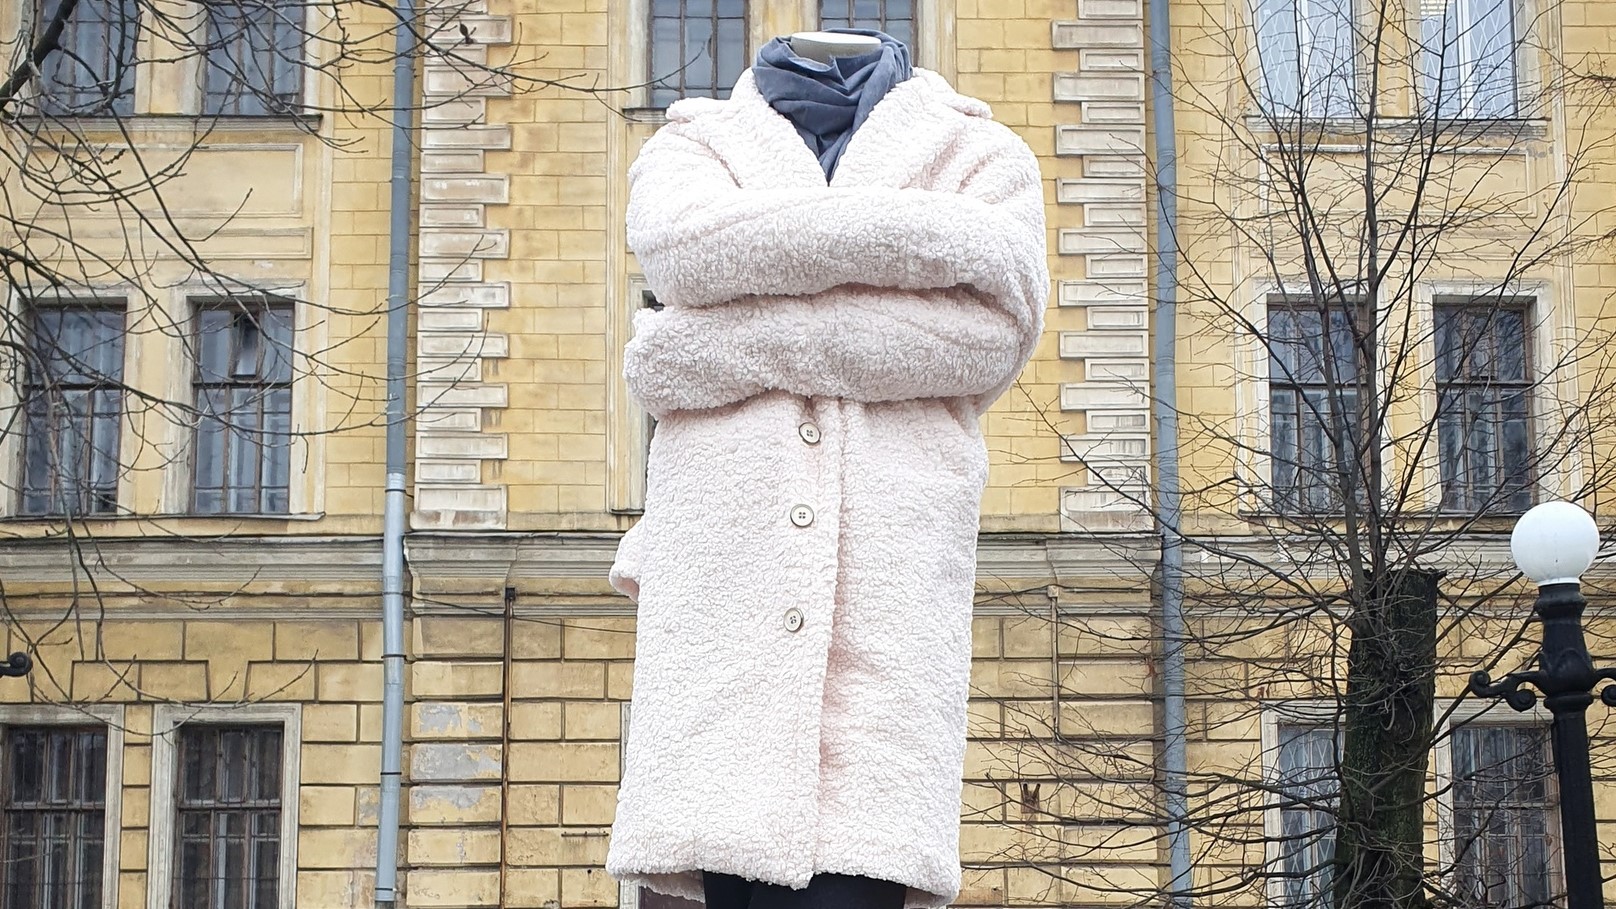 Памятник белому пальто появился в Санкт-Петербурге